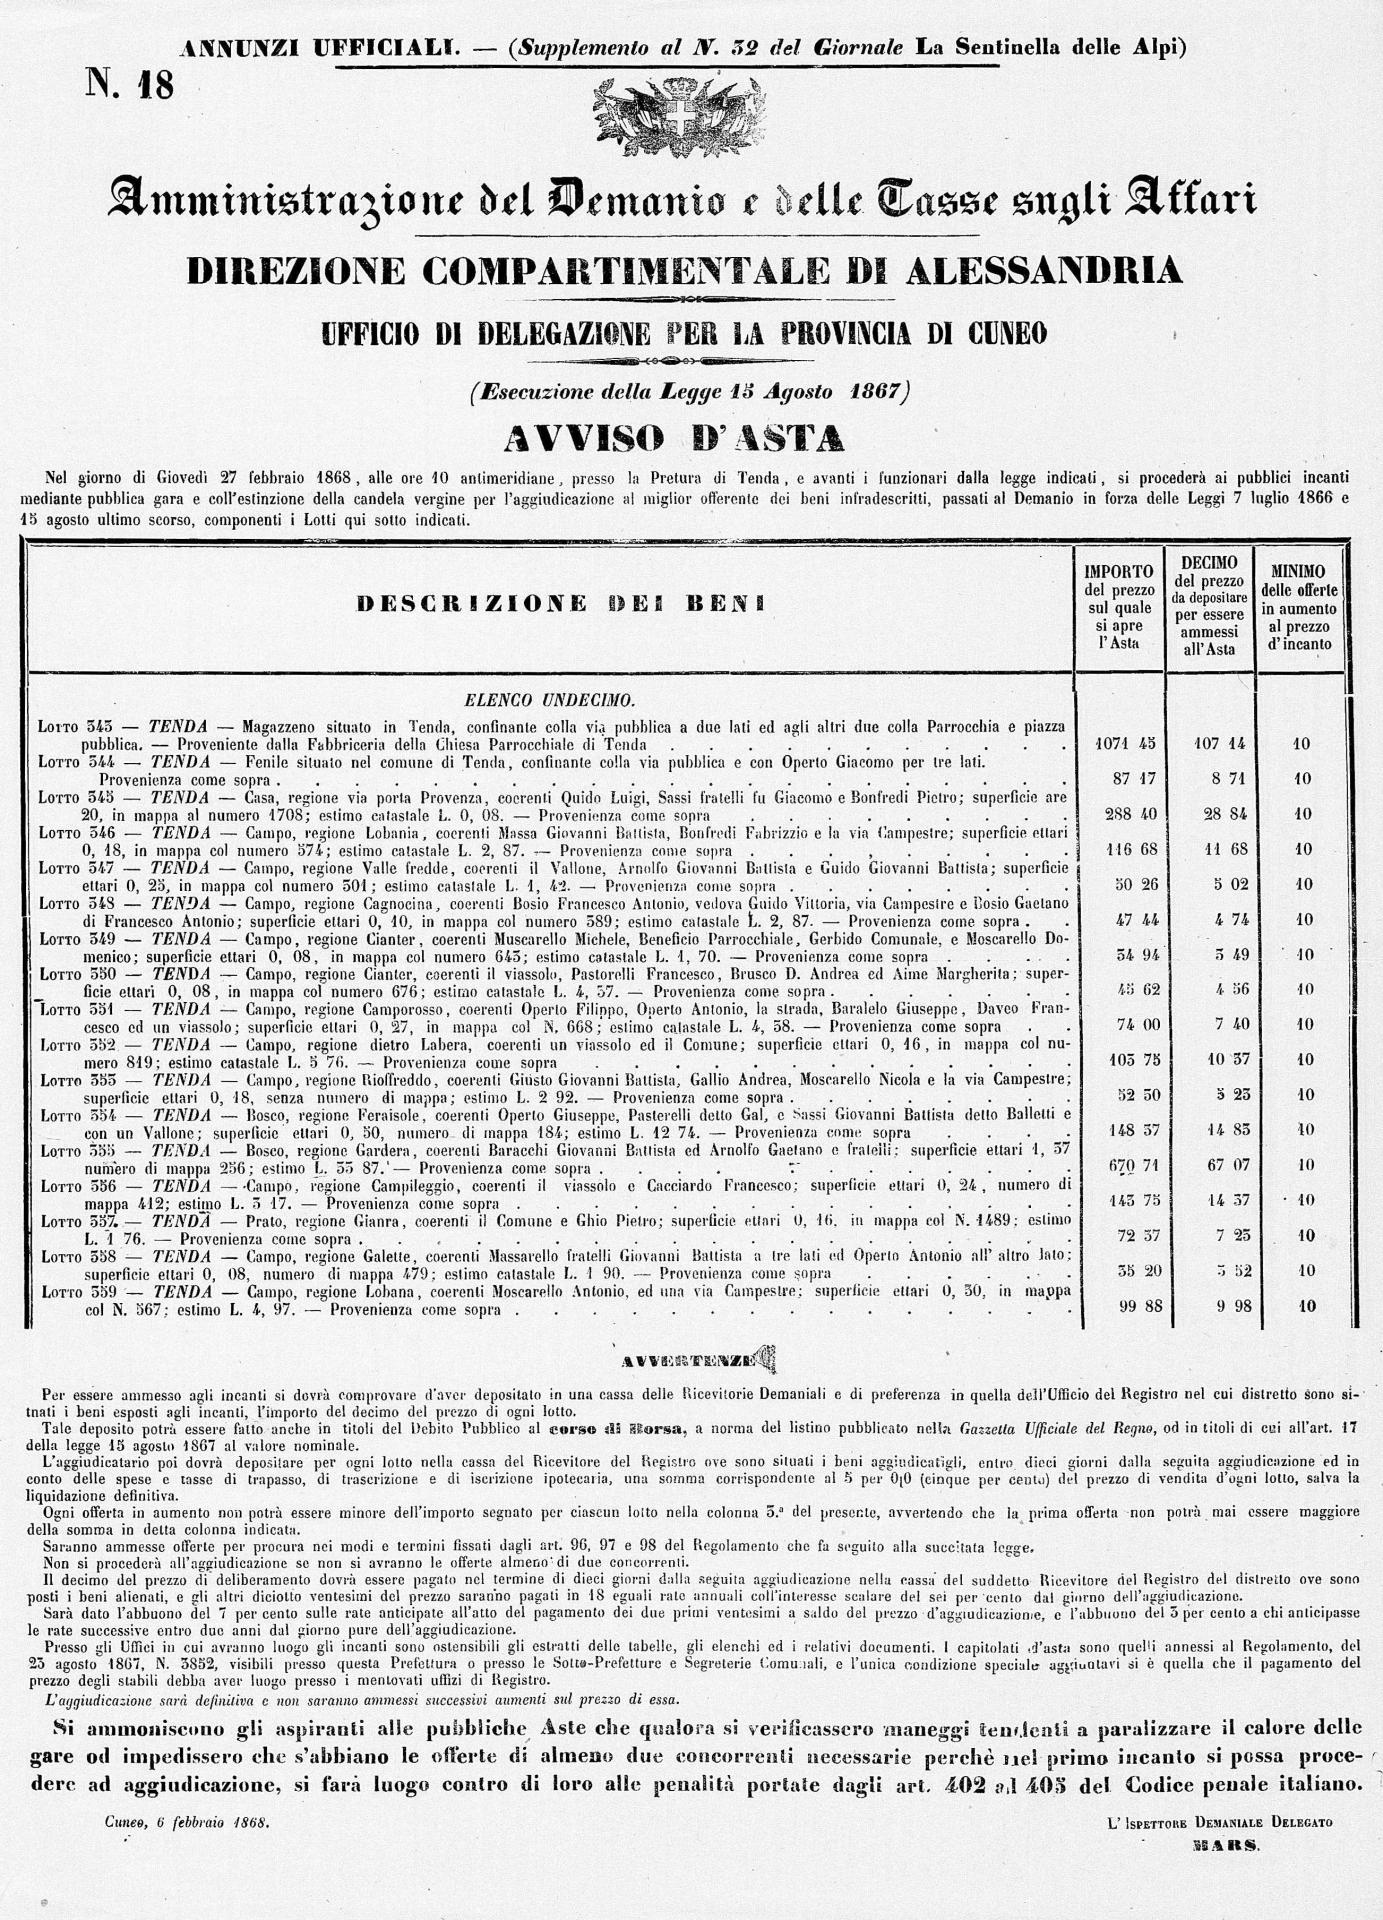 33 du 8 2 1868